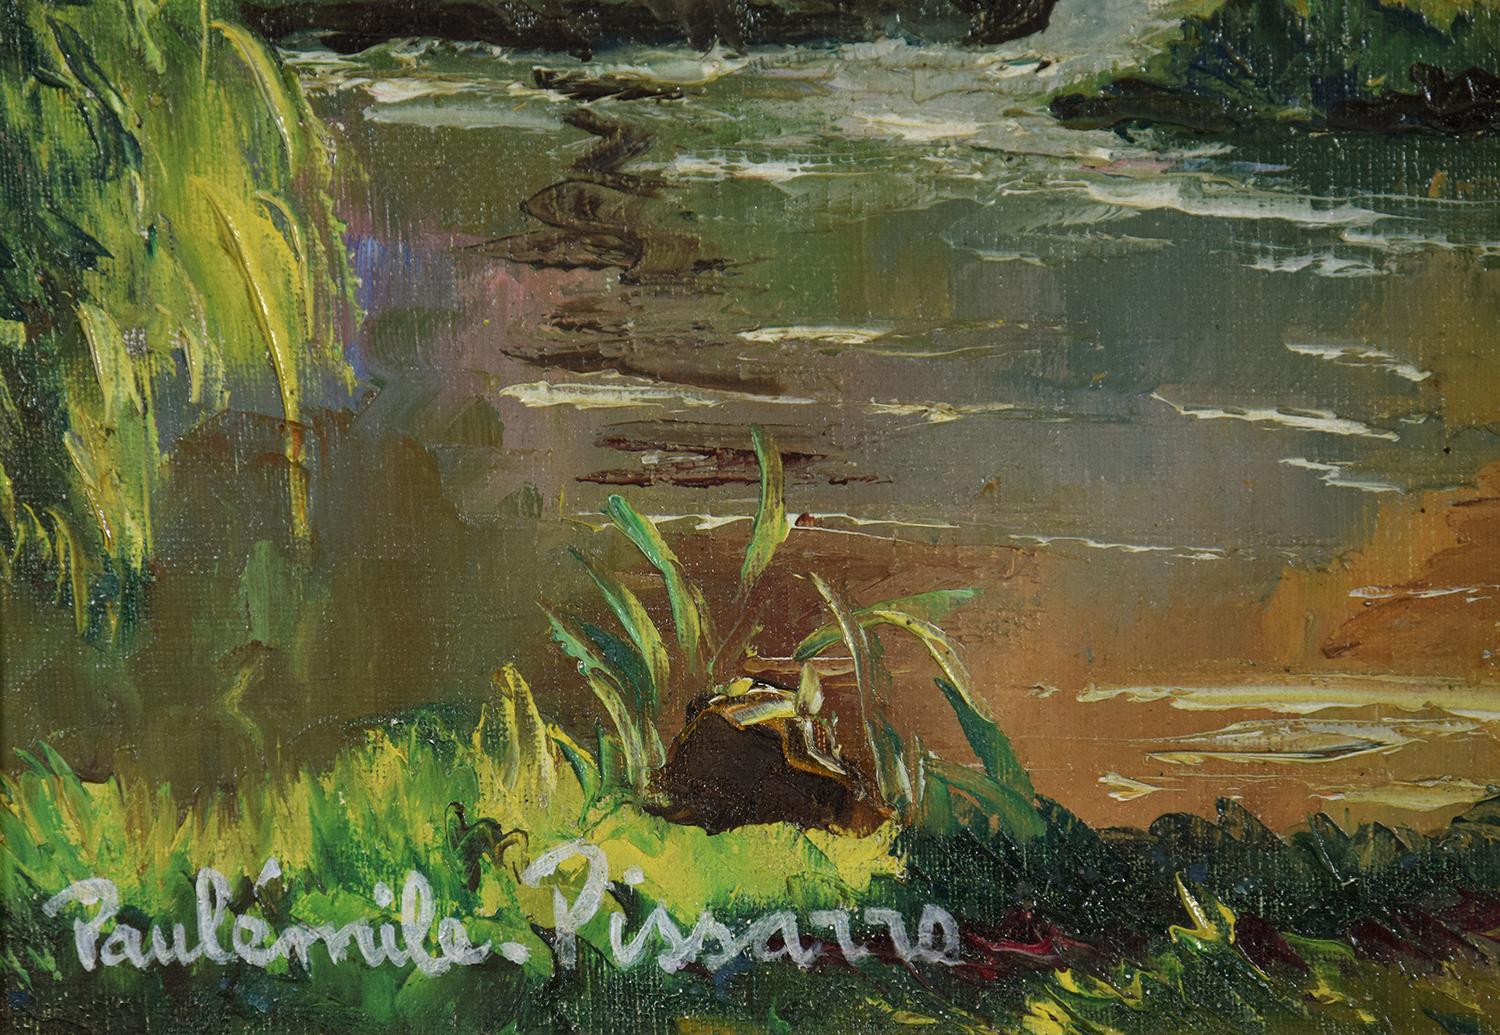 Bord de l'Orne by Paulémile Pissarro - Post Impressionist landscape/waterscape - Post-Impressionist Painting by Paul Emile Pissarro